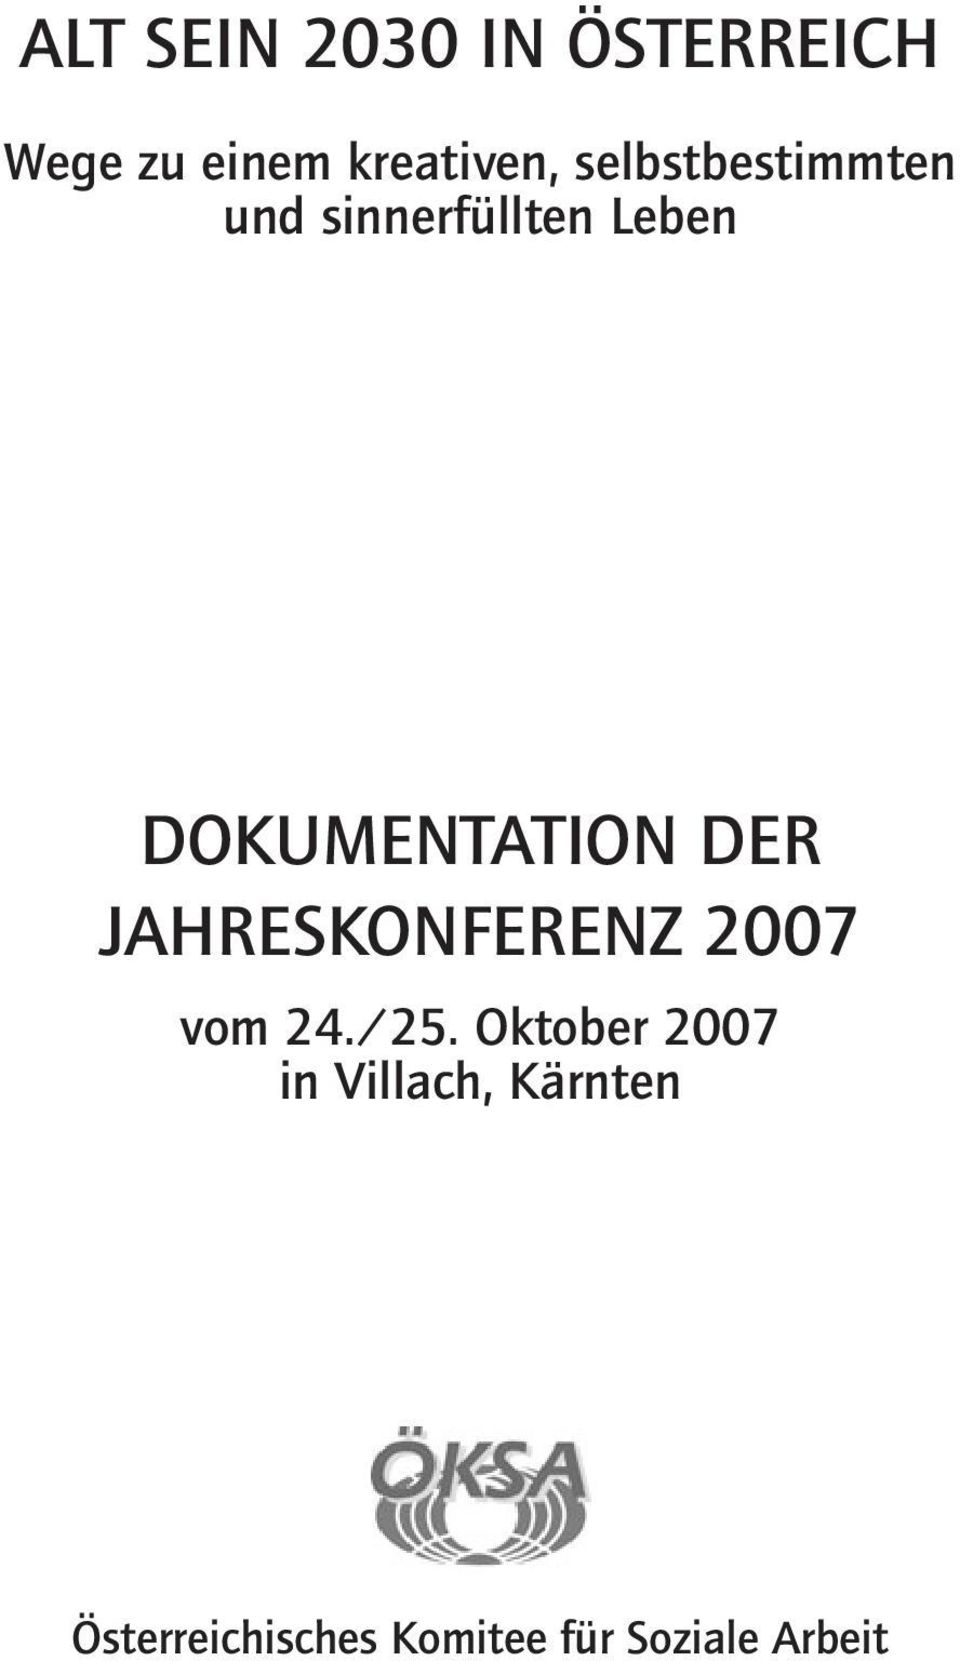 DER JAHRESKONFERENZ 2007 vom 24./25.